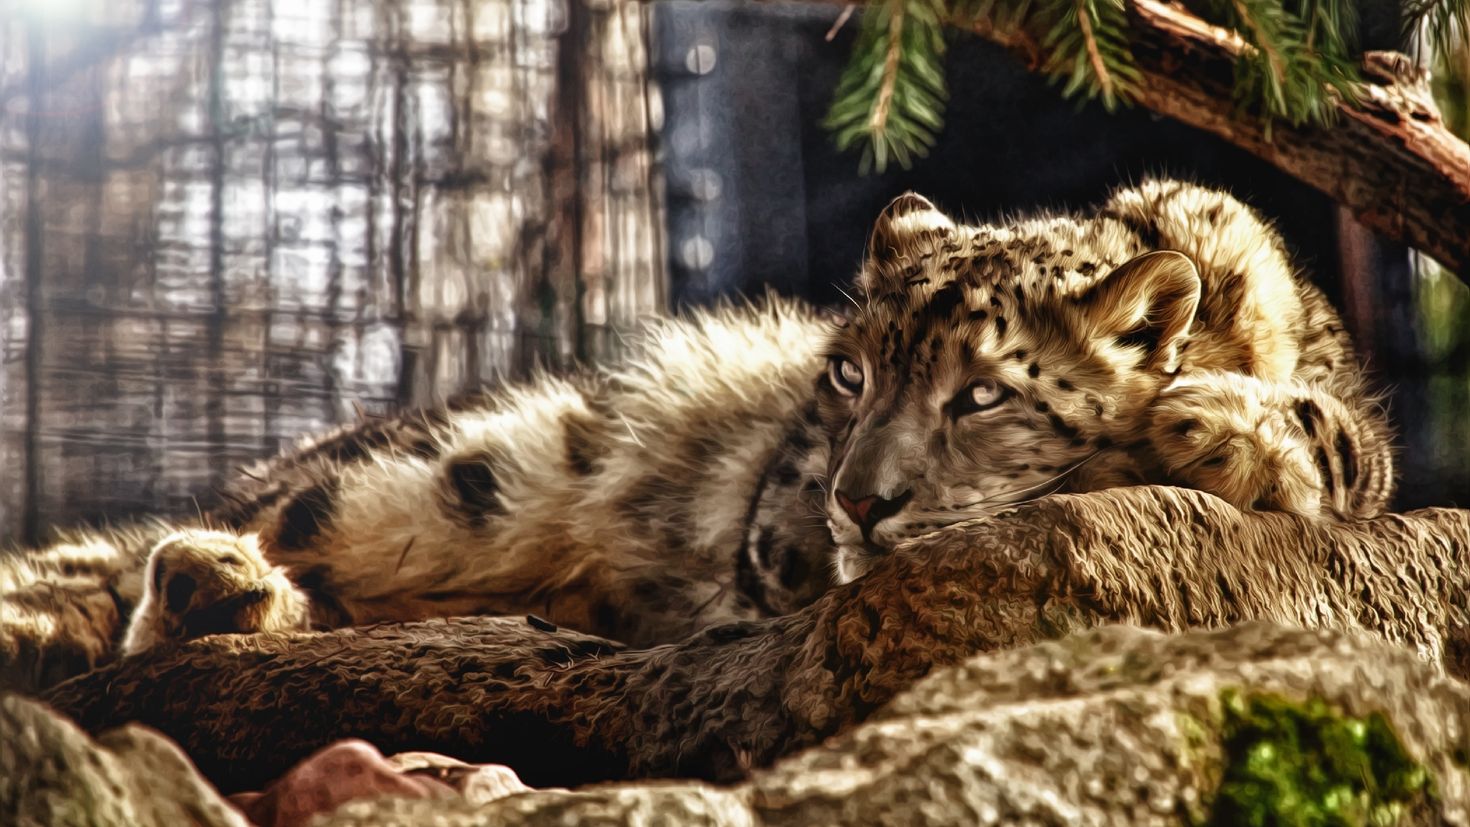 Картинка на обои высокого качества. Леопард снежный Барс Ягуар. Красивые животные. Картинки на рабочий стол. Фотообои природа животные.